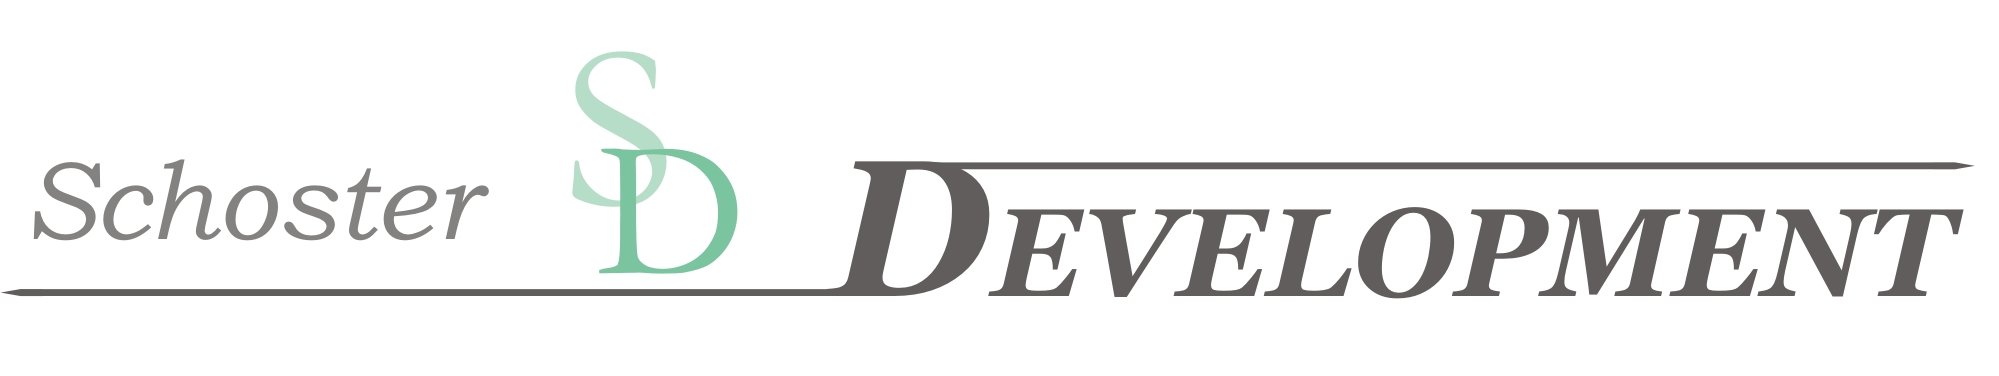 Schoster Development Logo